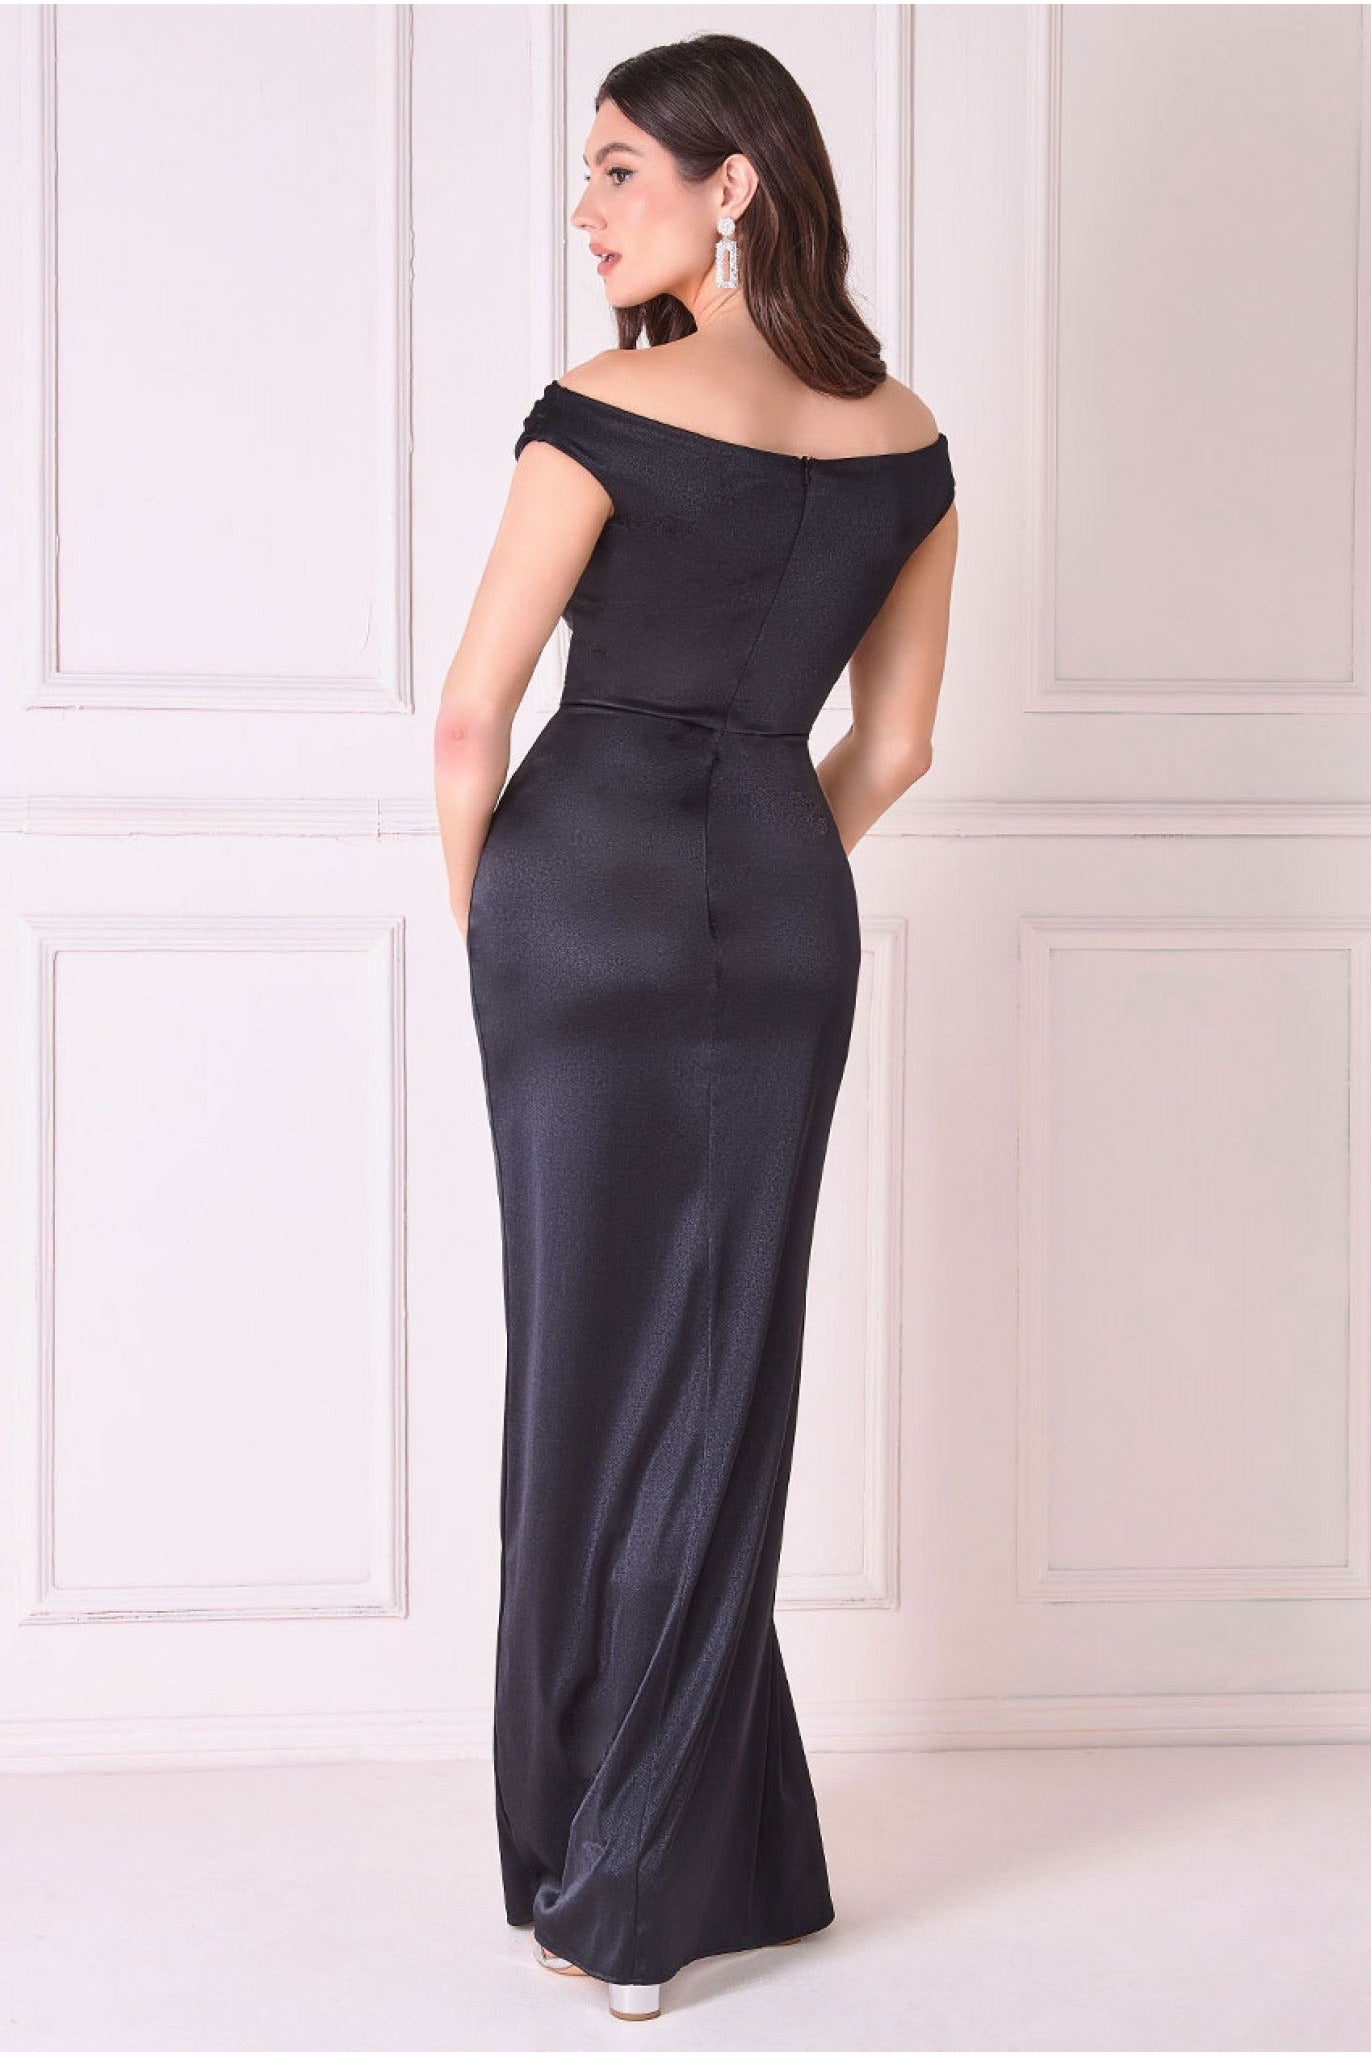 Cowl Bardot Satin Twill Maxi Dress - Black DR4010